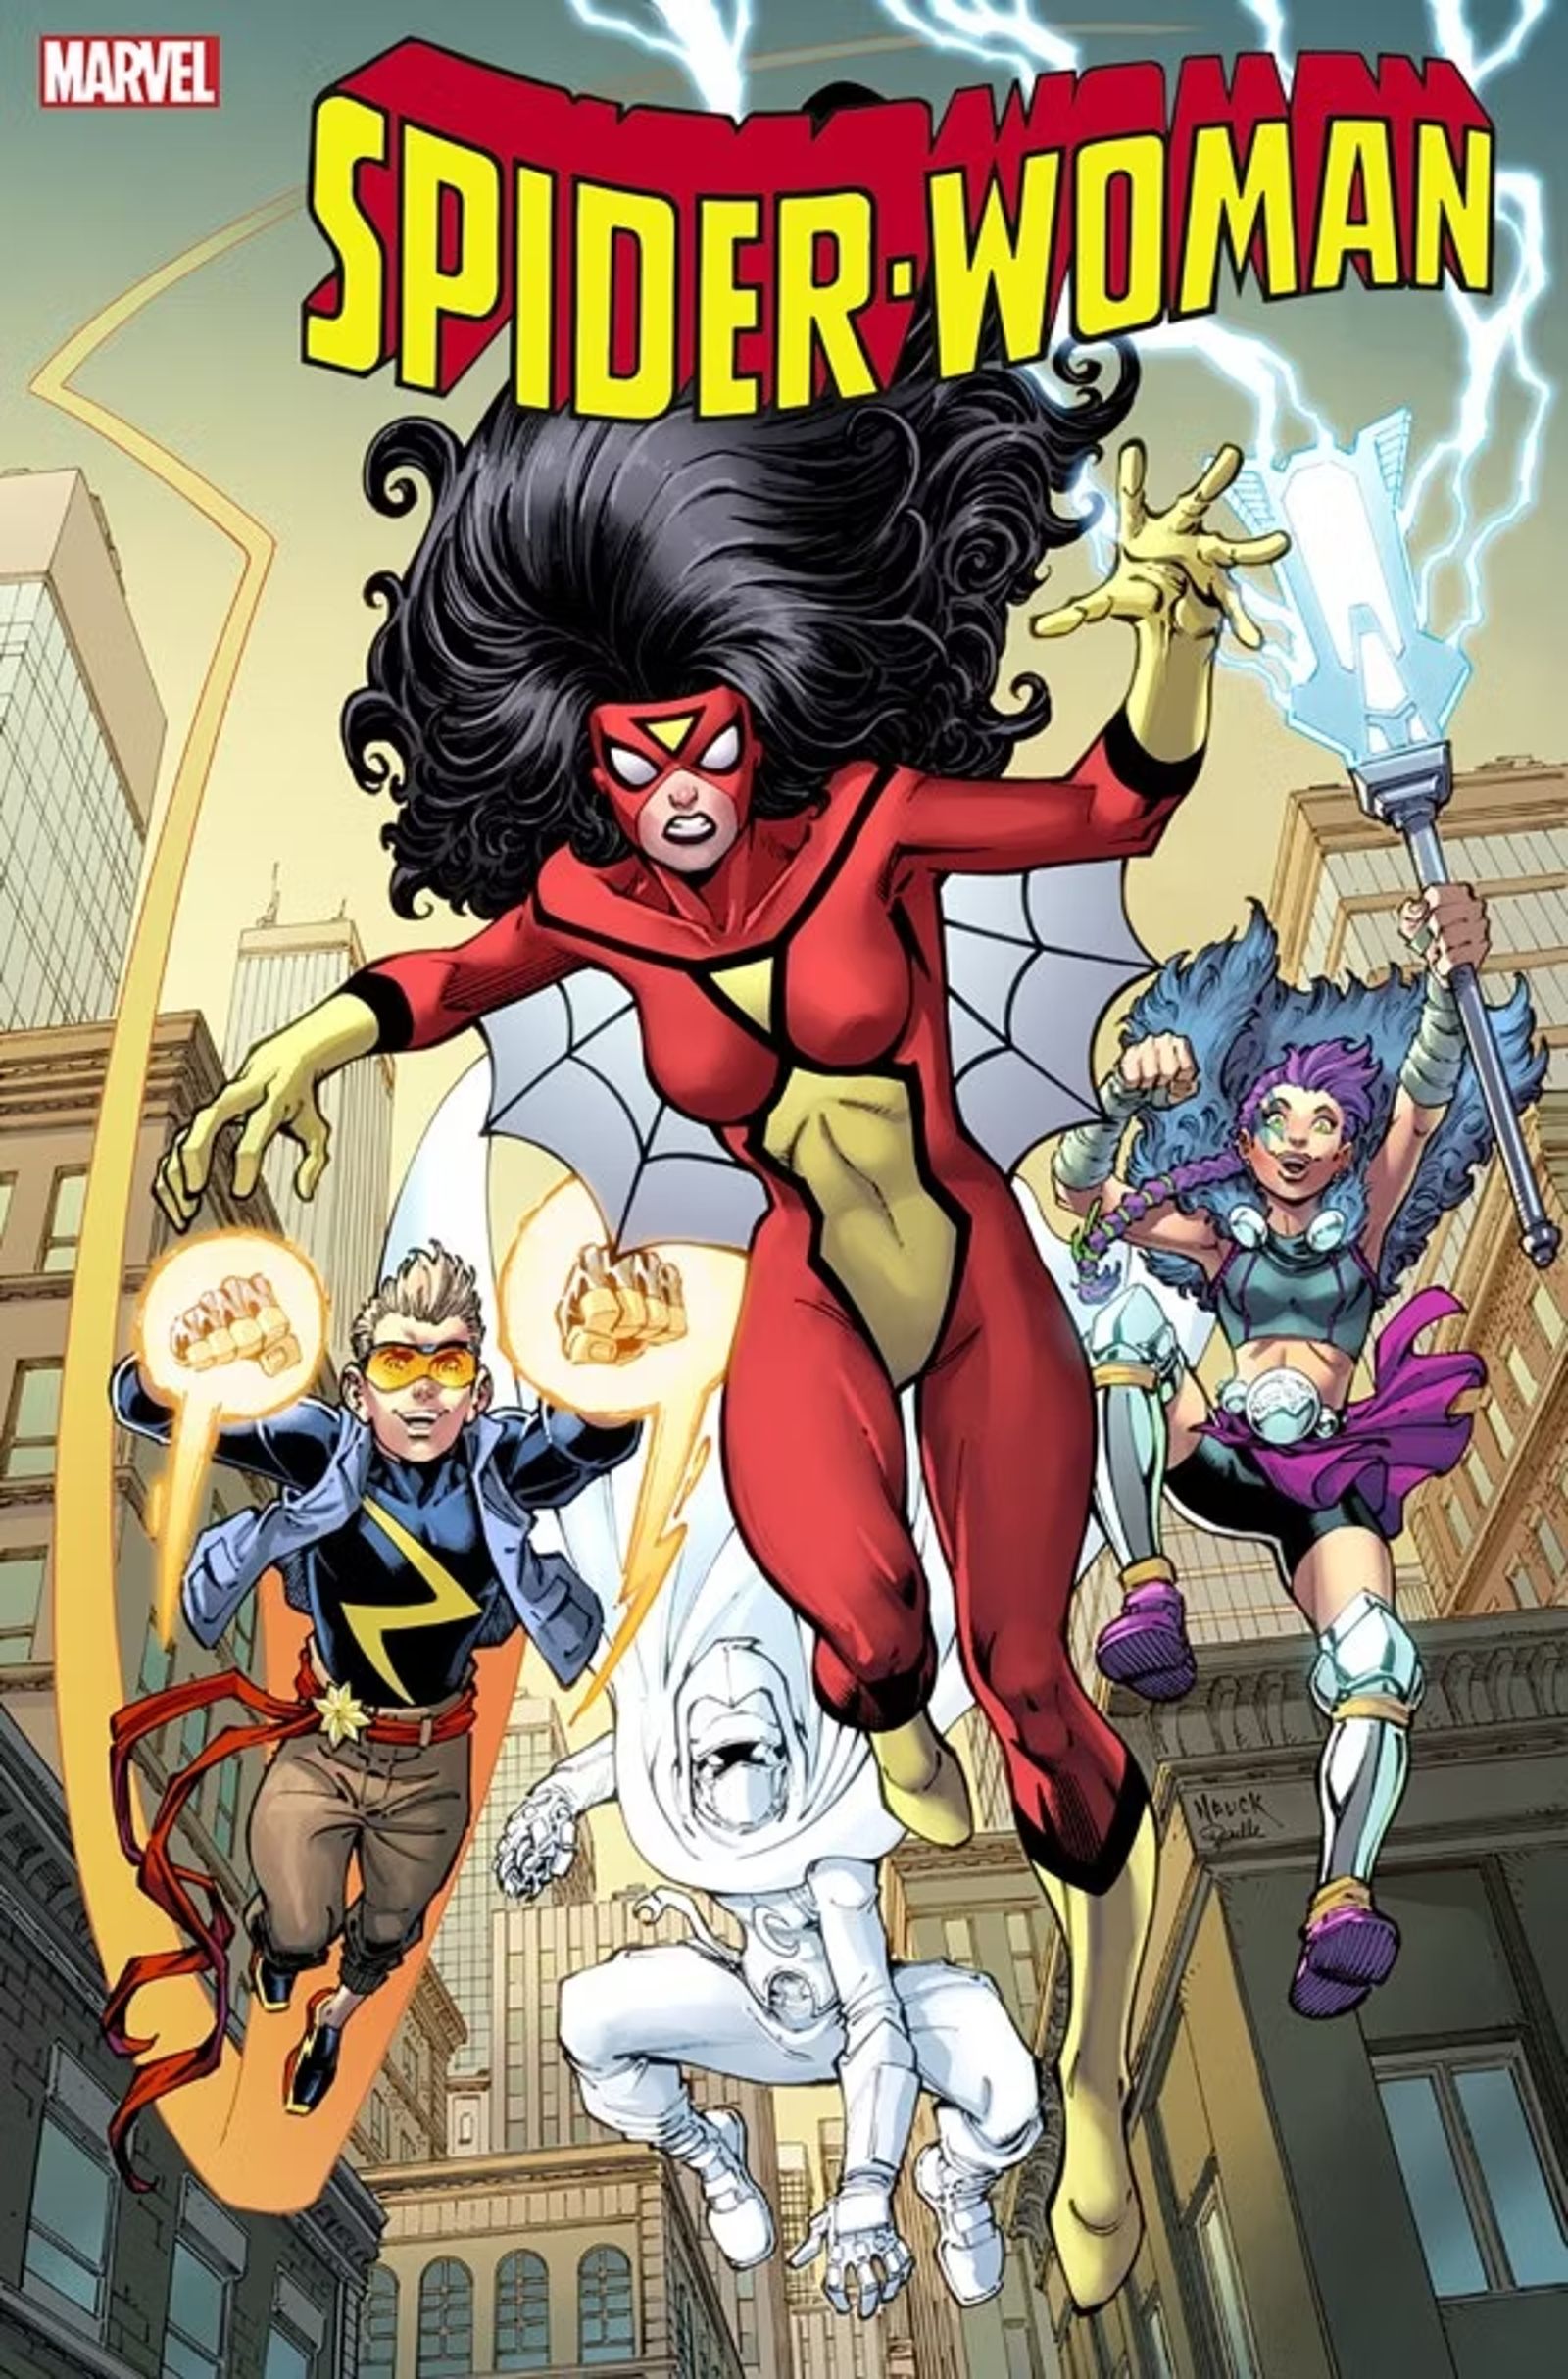 Mulher-Aranha #7, capa variante de Todd Nauck, Jessica Drew liderando os Novos Campeões na batalha.